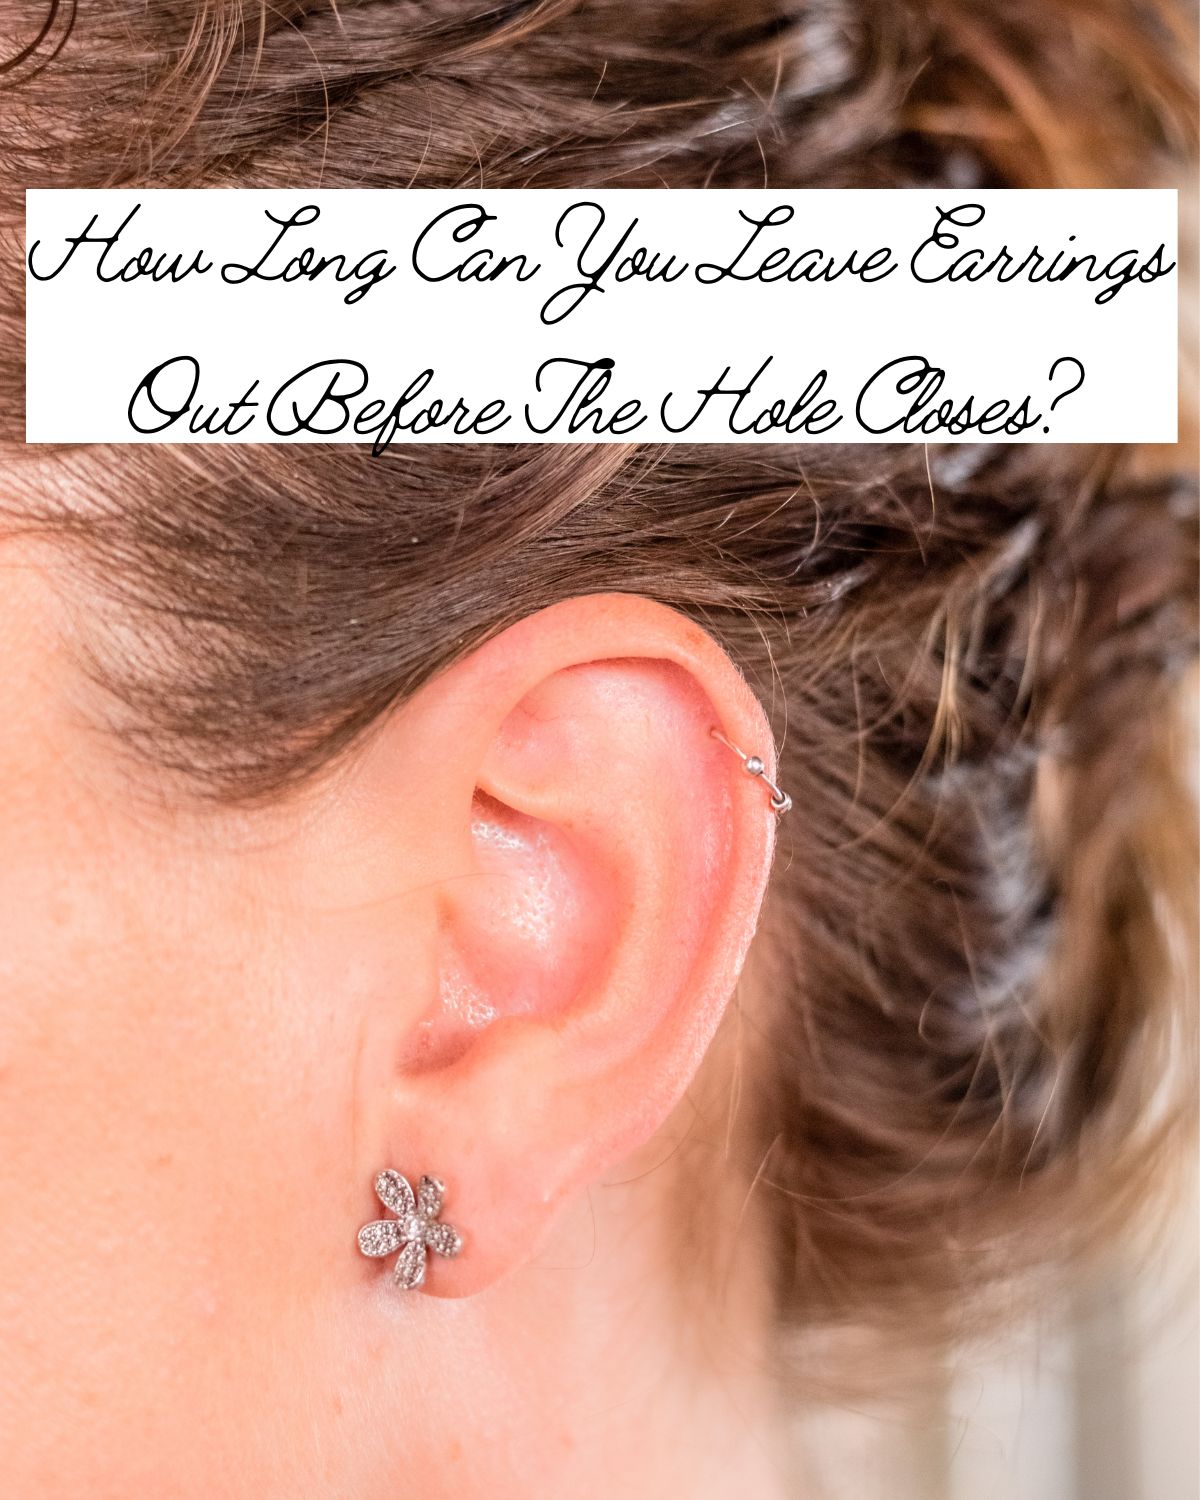 A woman wearing a flower earring